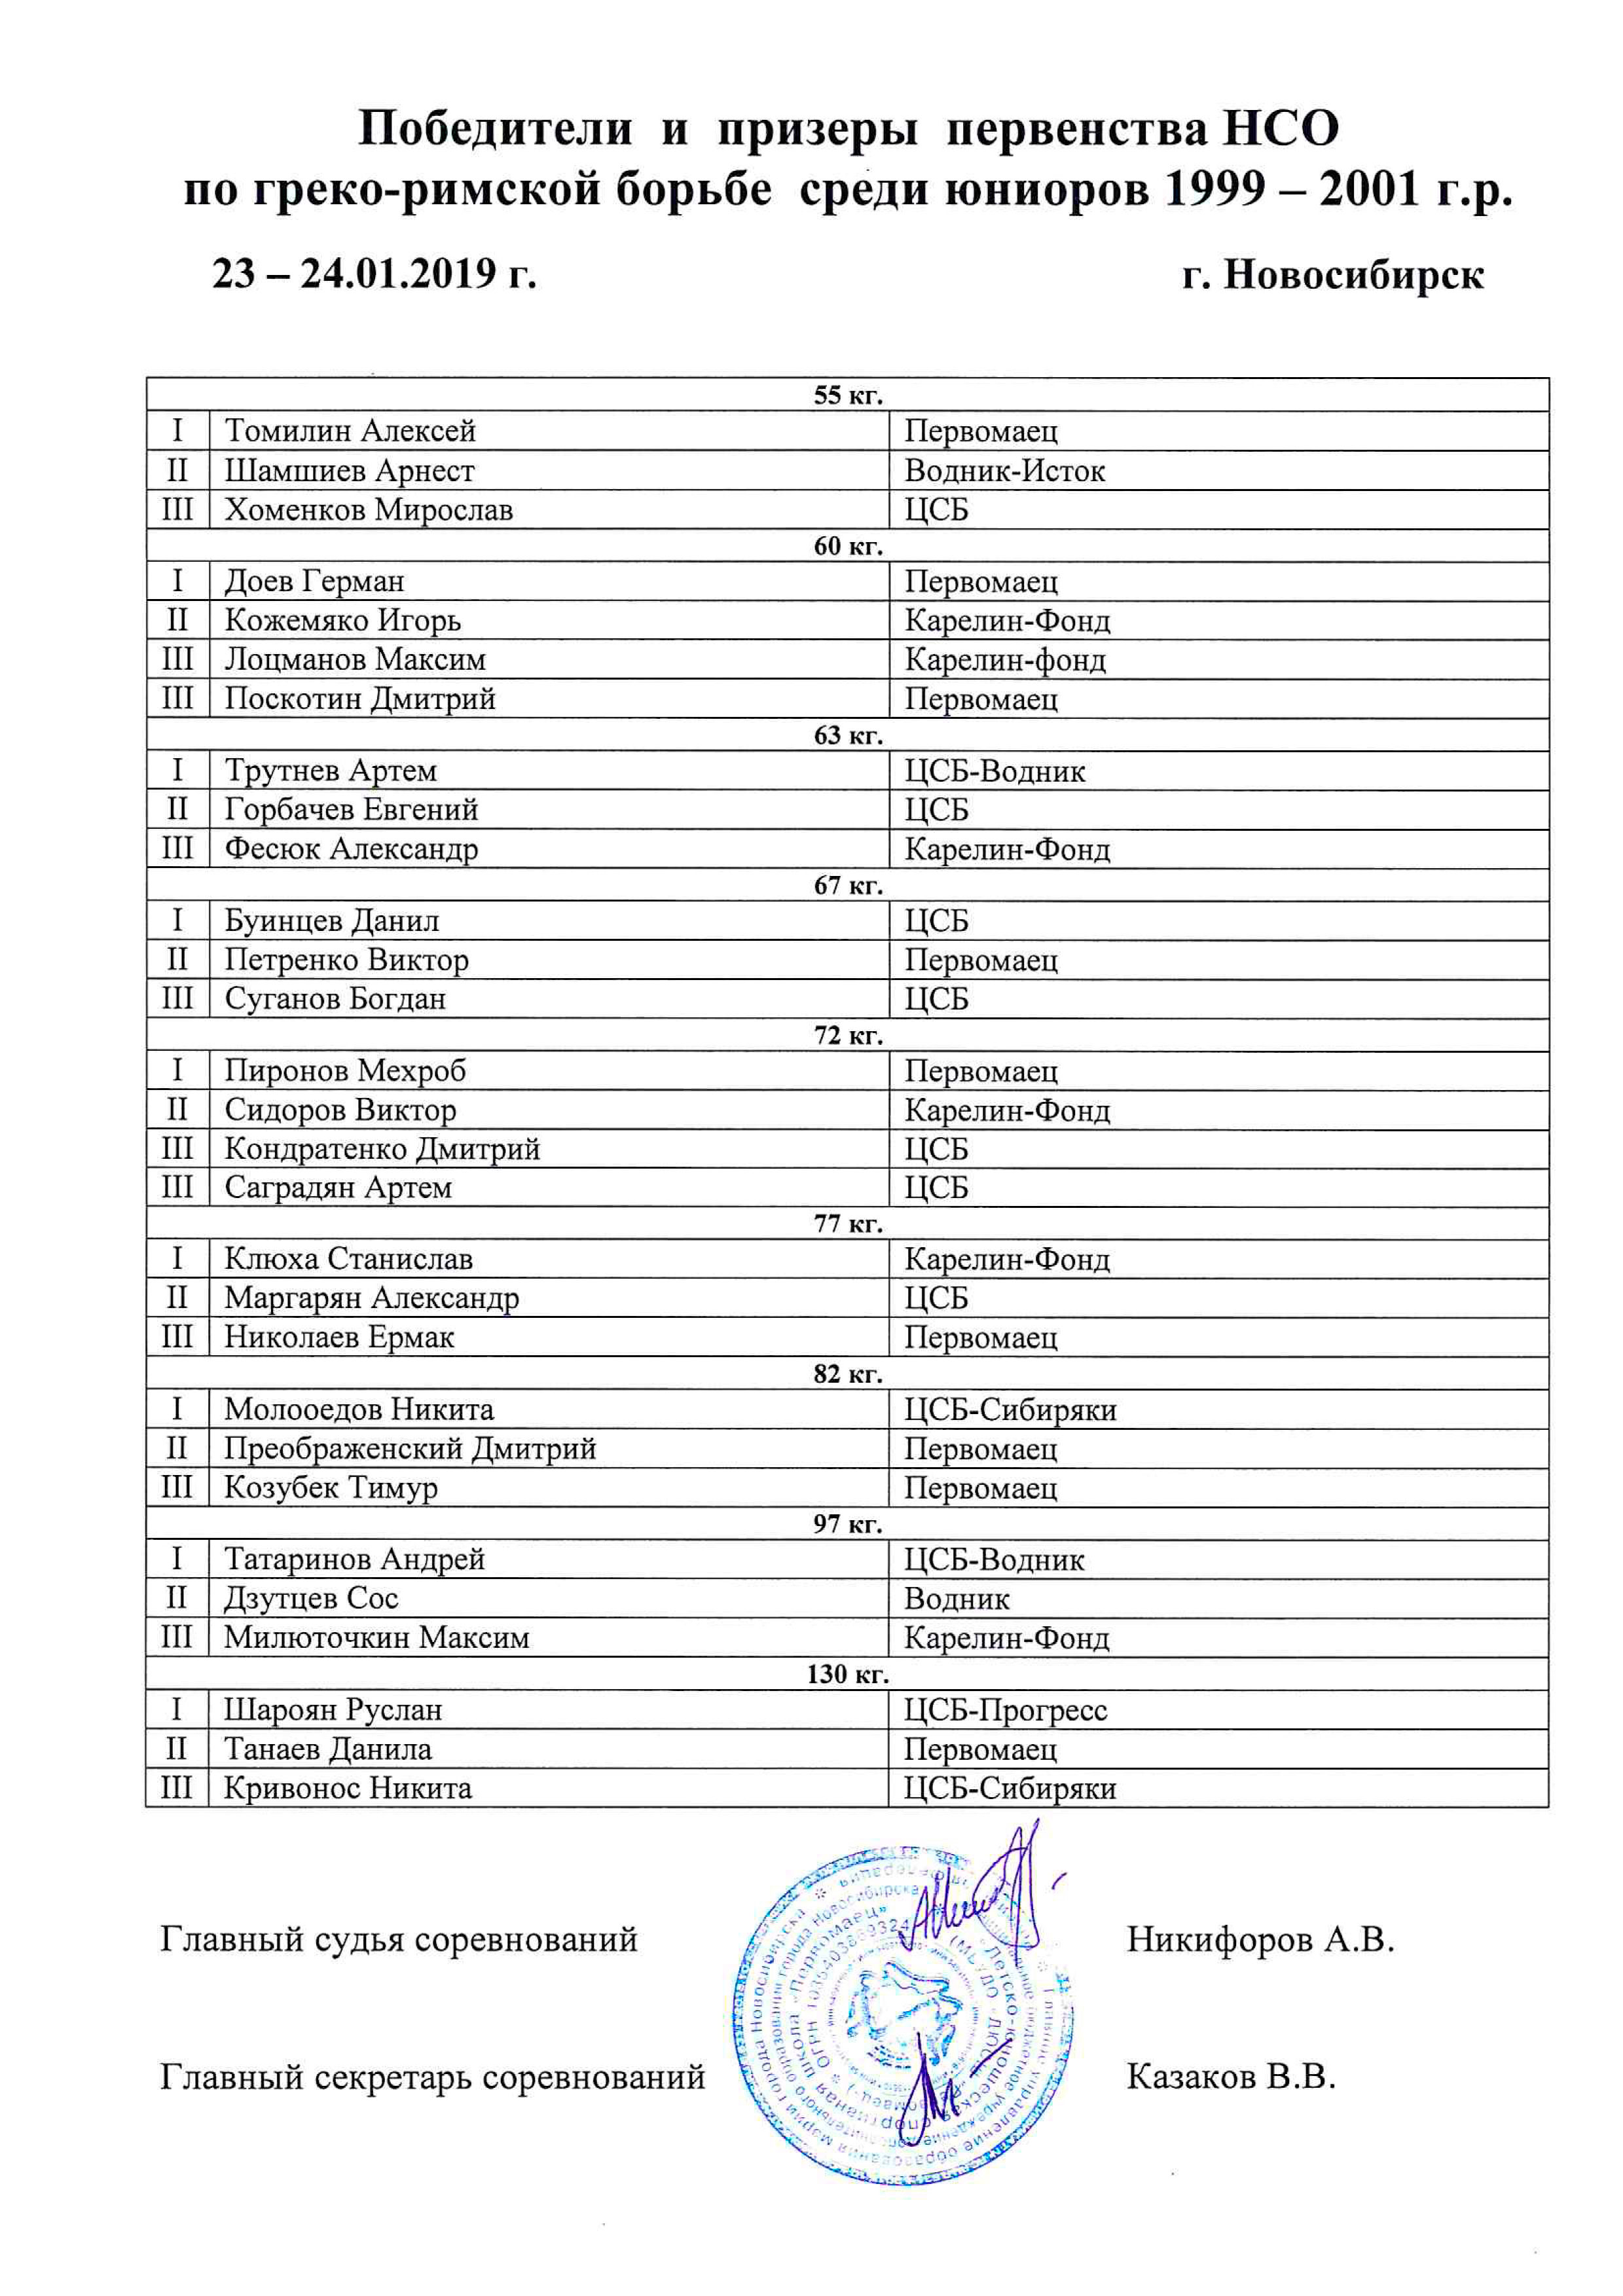 Победители и призеры первенства НСО по ГРБ 1999 2001 23 24.01.2019